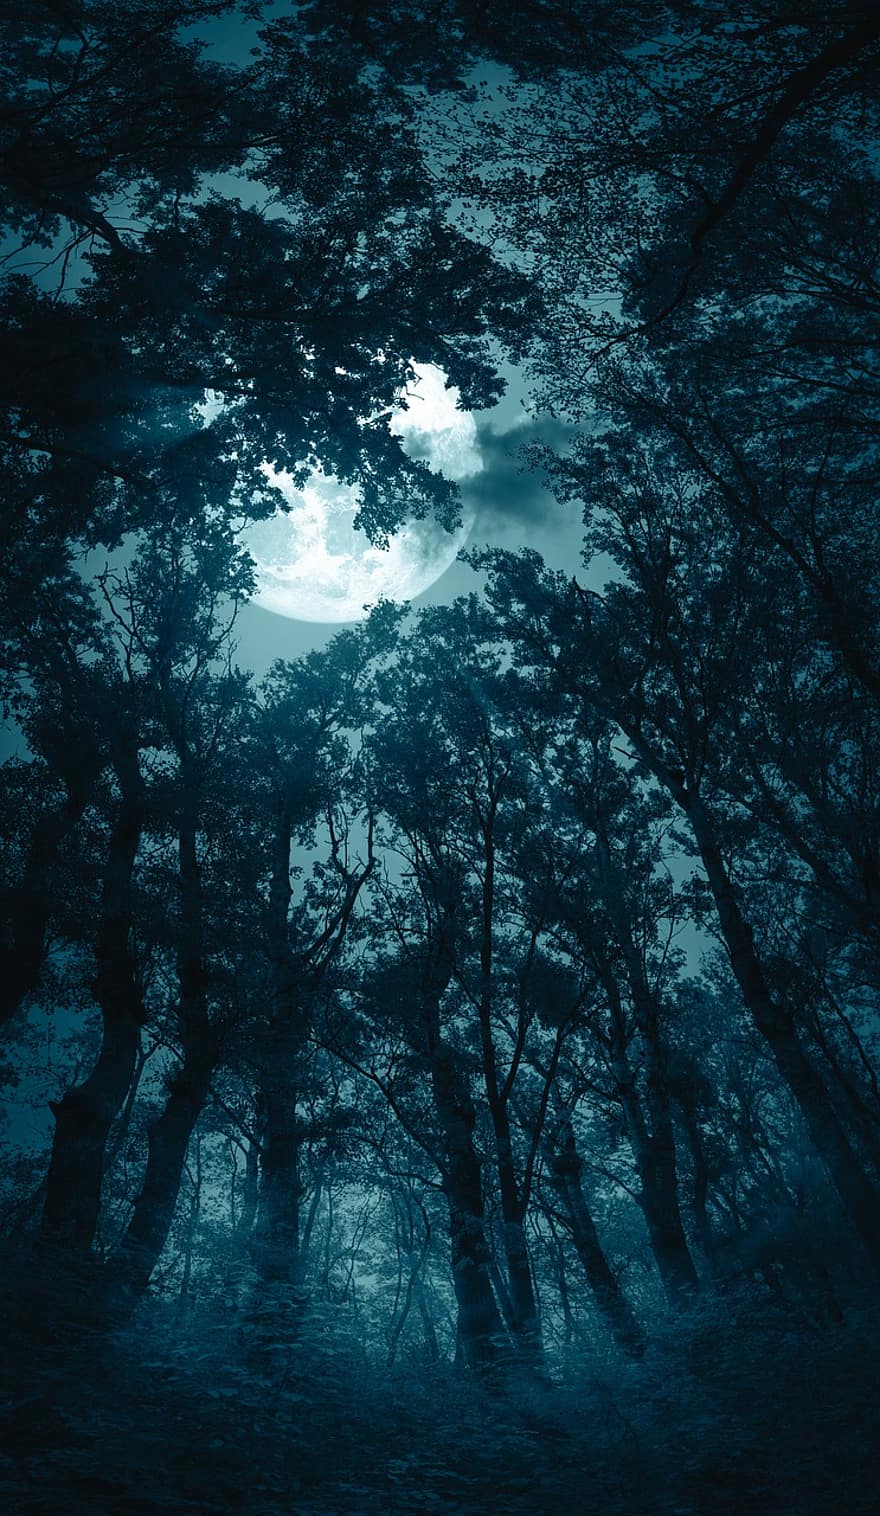 les, měsíc, mlha, noc, předvečer Všech svatých, měsíční svit, strašidelný, tma, mystický, fantazie, hrůza